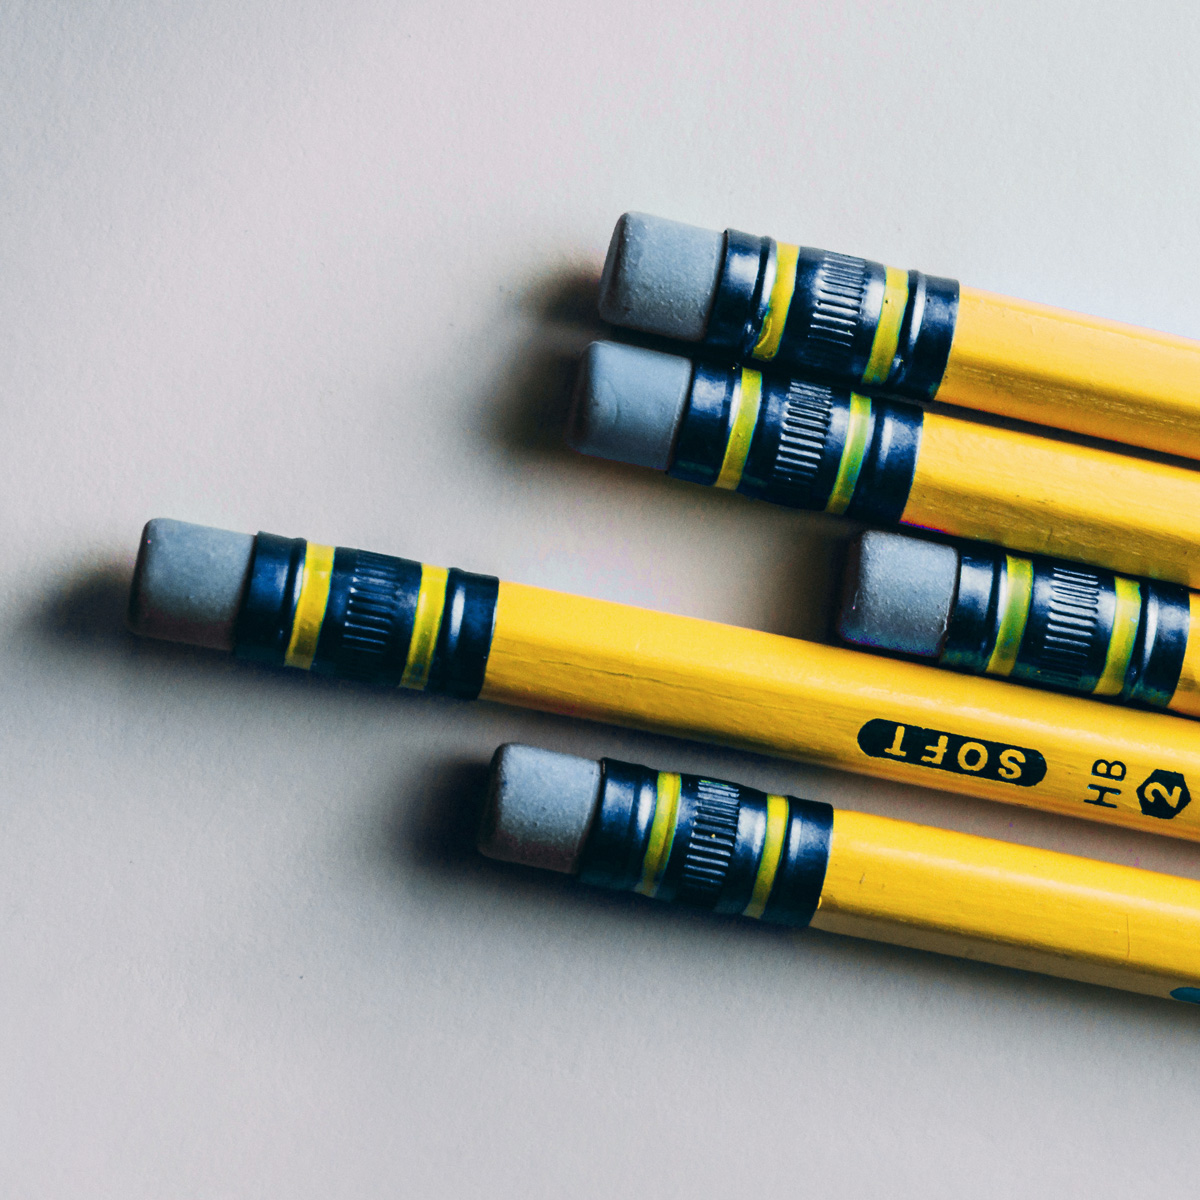 vijf gele potloden met een geel gummetje